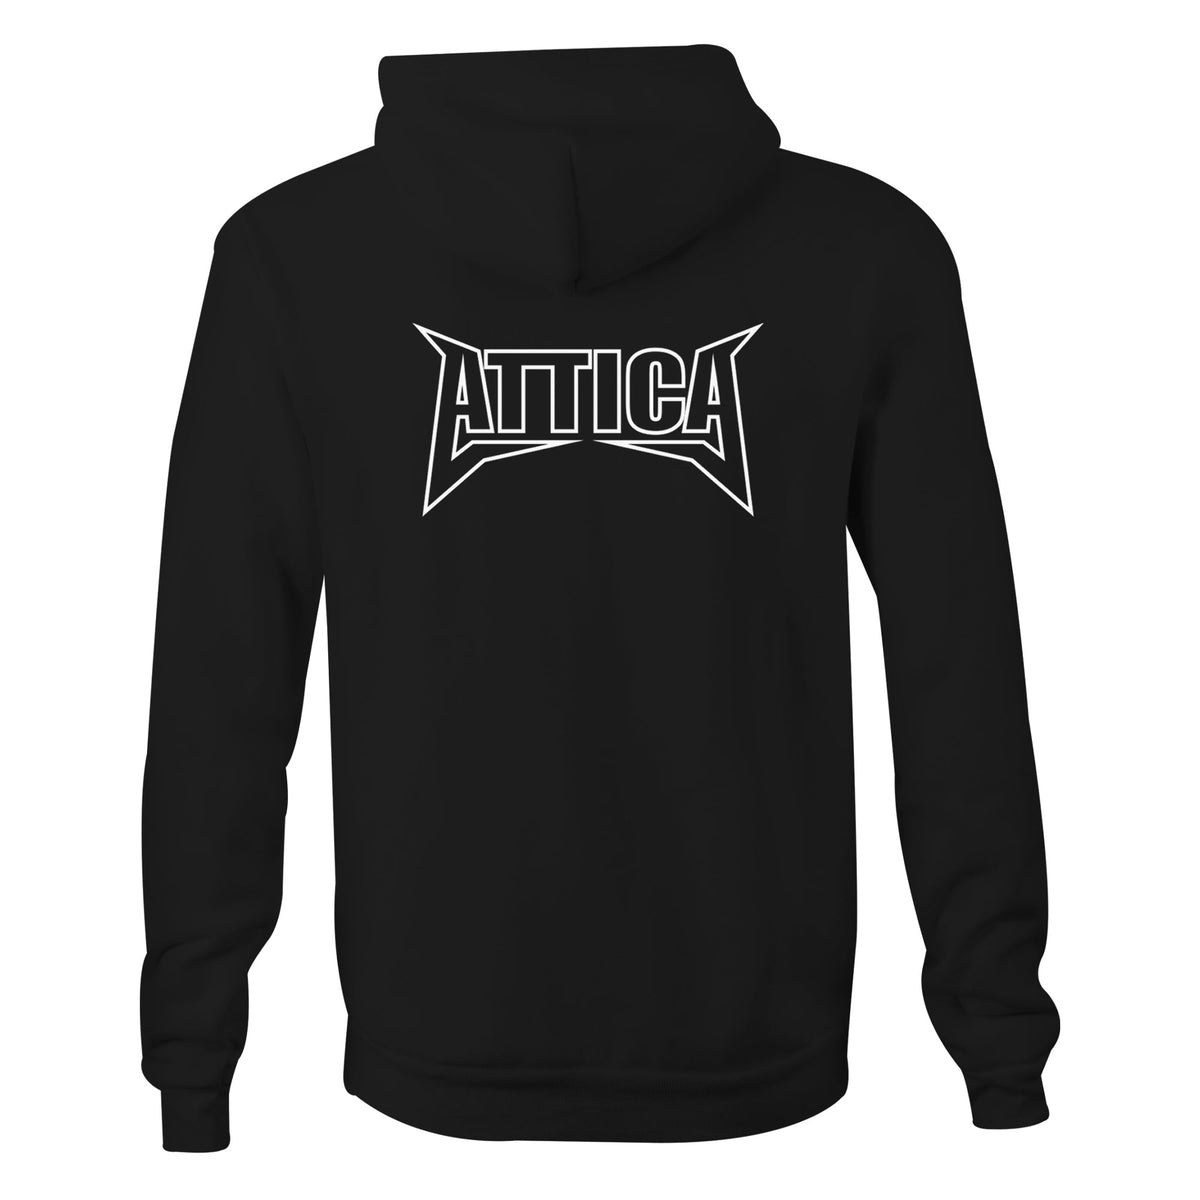 ATTICA ‘MENTAL’ Hooded Jumper - Black